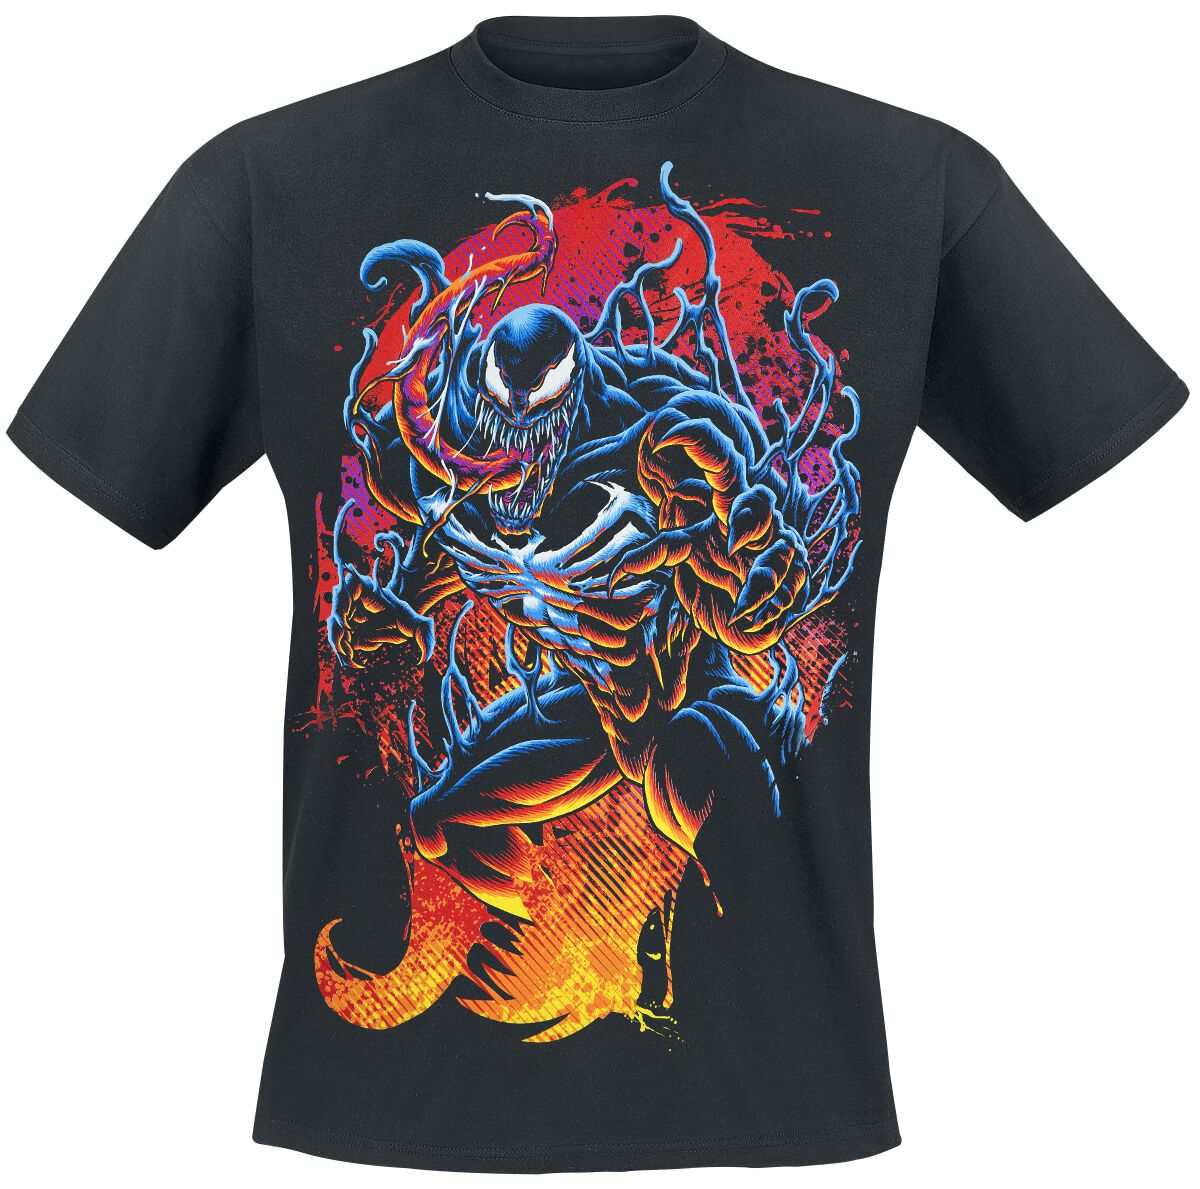 Venom (Marvel) Burning Symbiote T-Shirt black